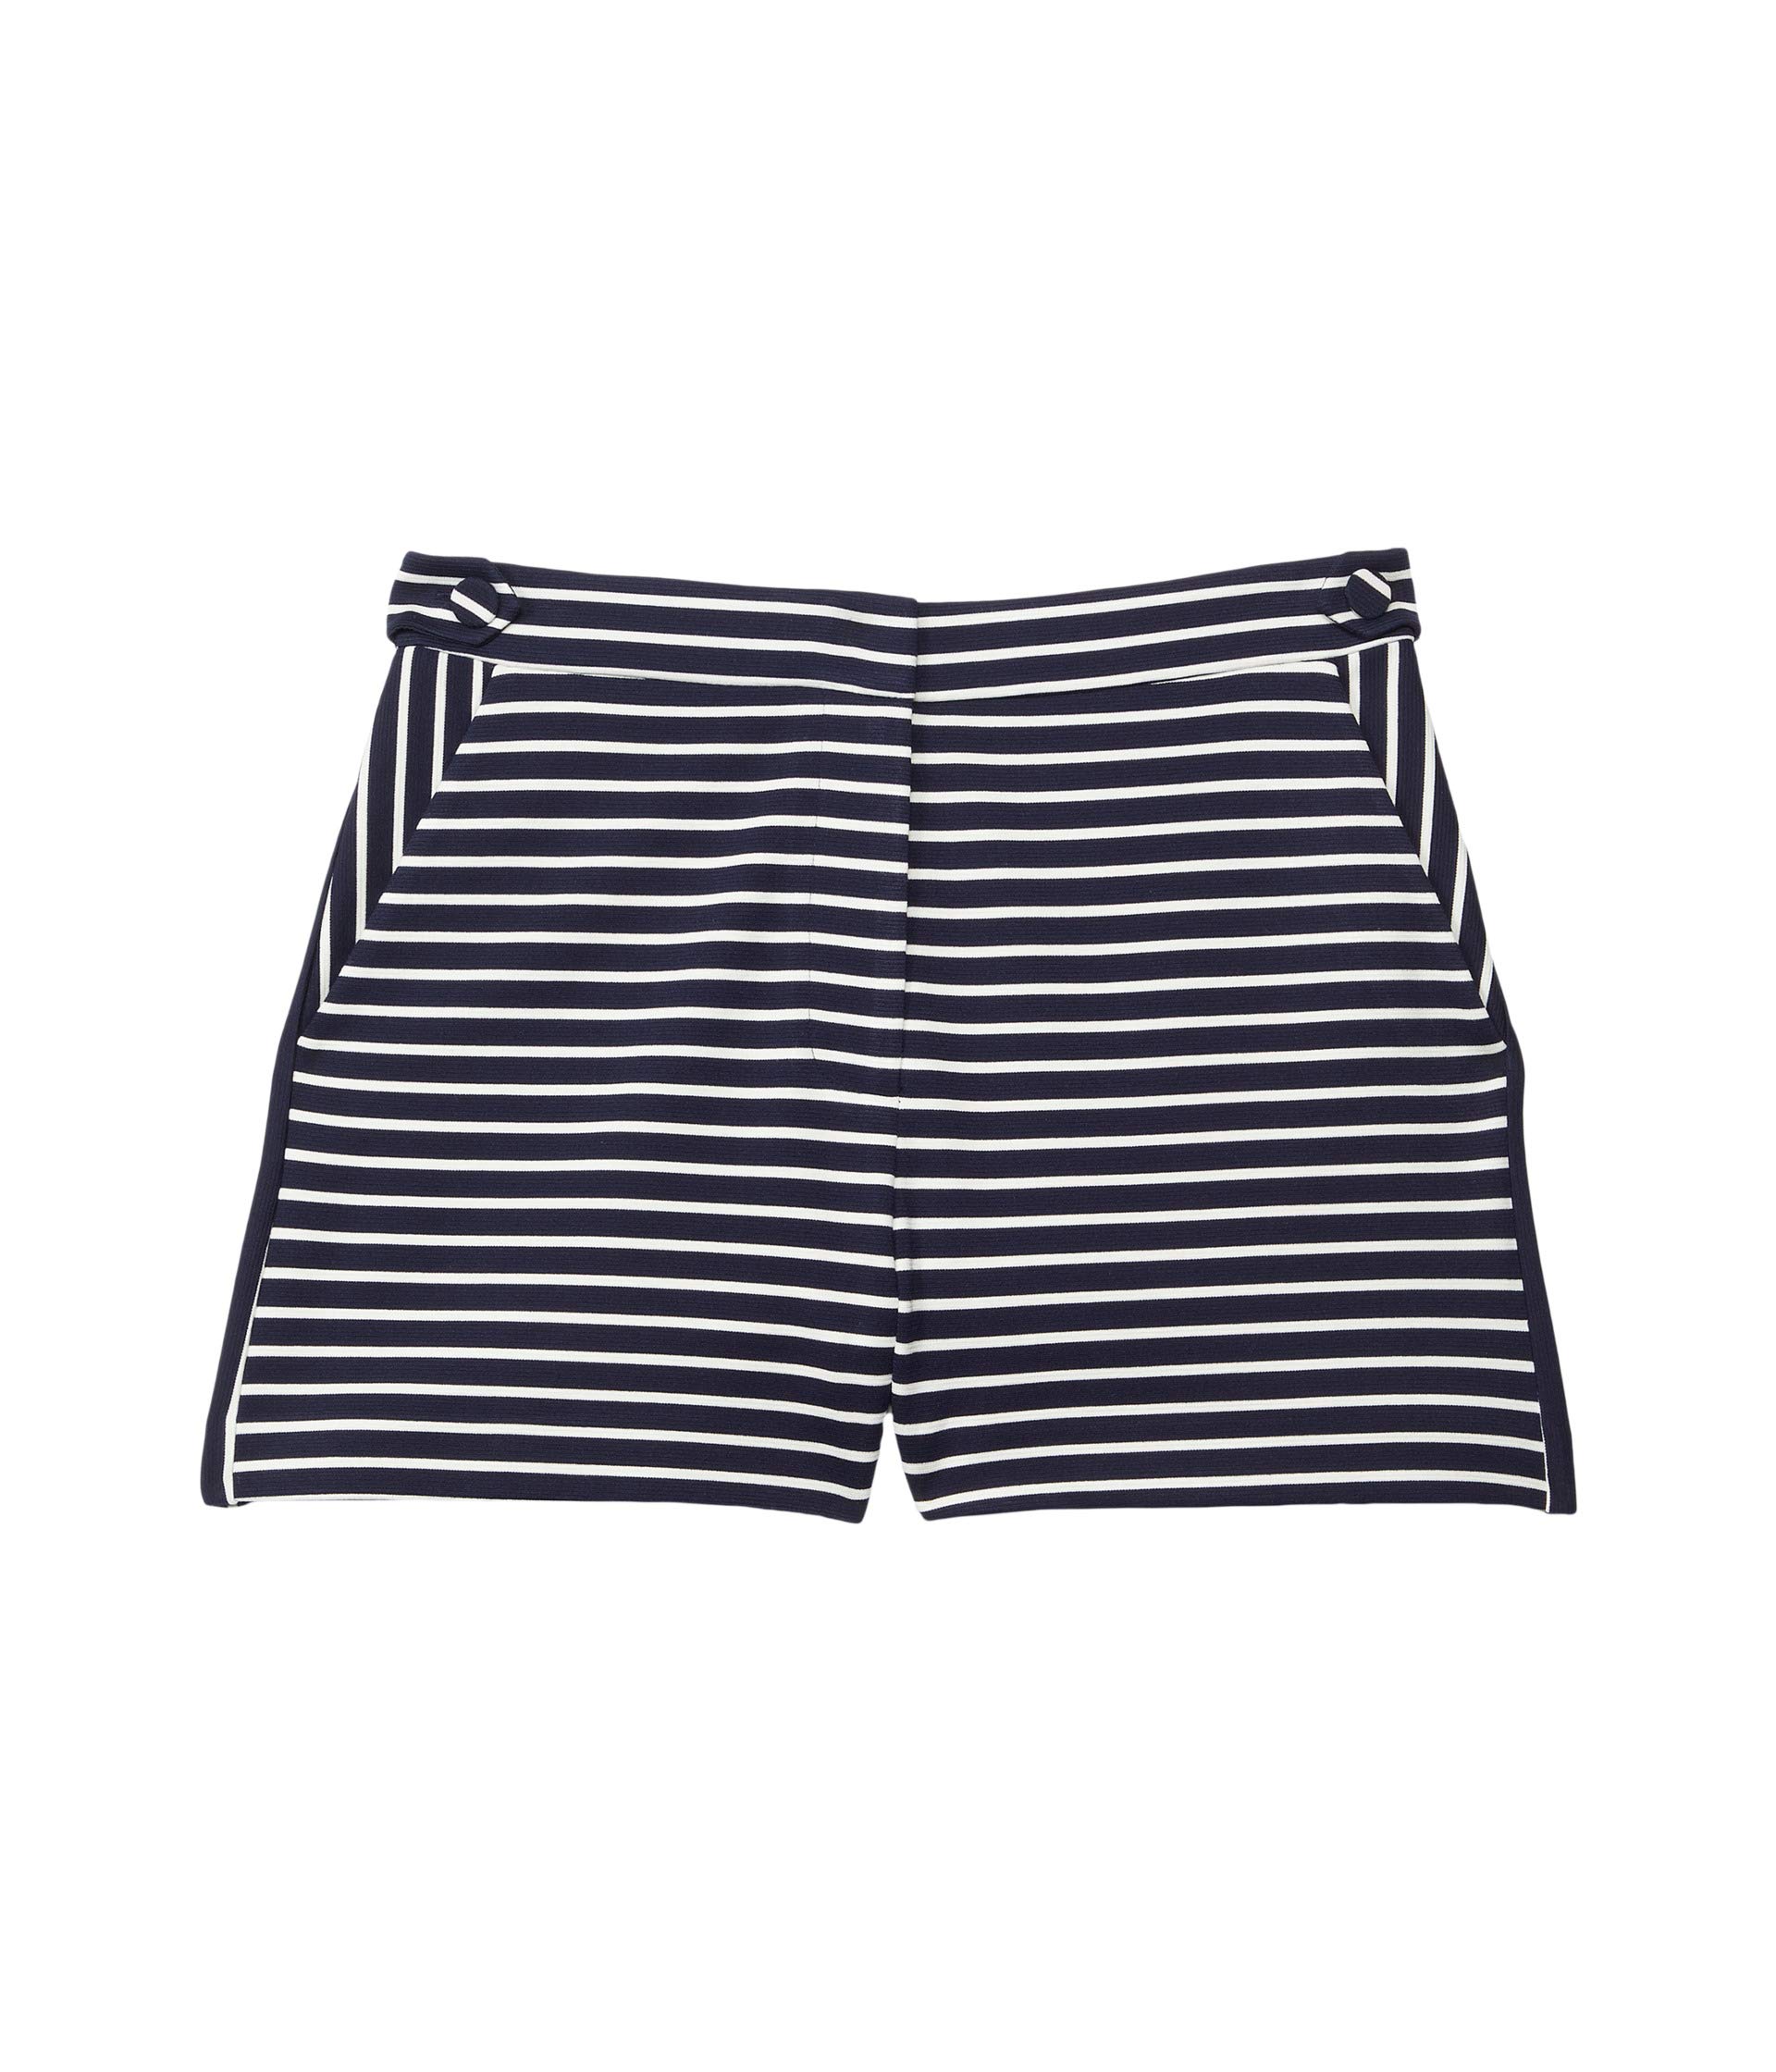 Шорты MILLY MINIS, Aria Yarn-Dye Knit w/ Sequin Shorts шорты milly minis aria cady shorts черный